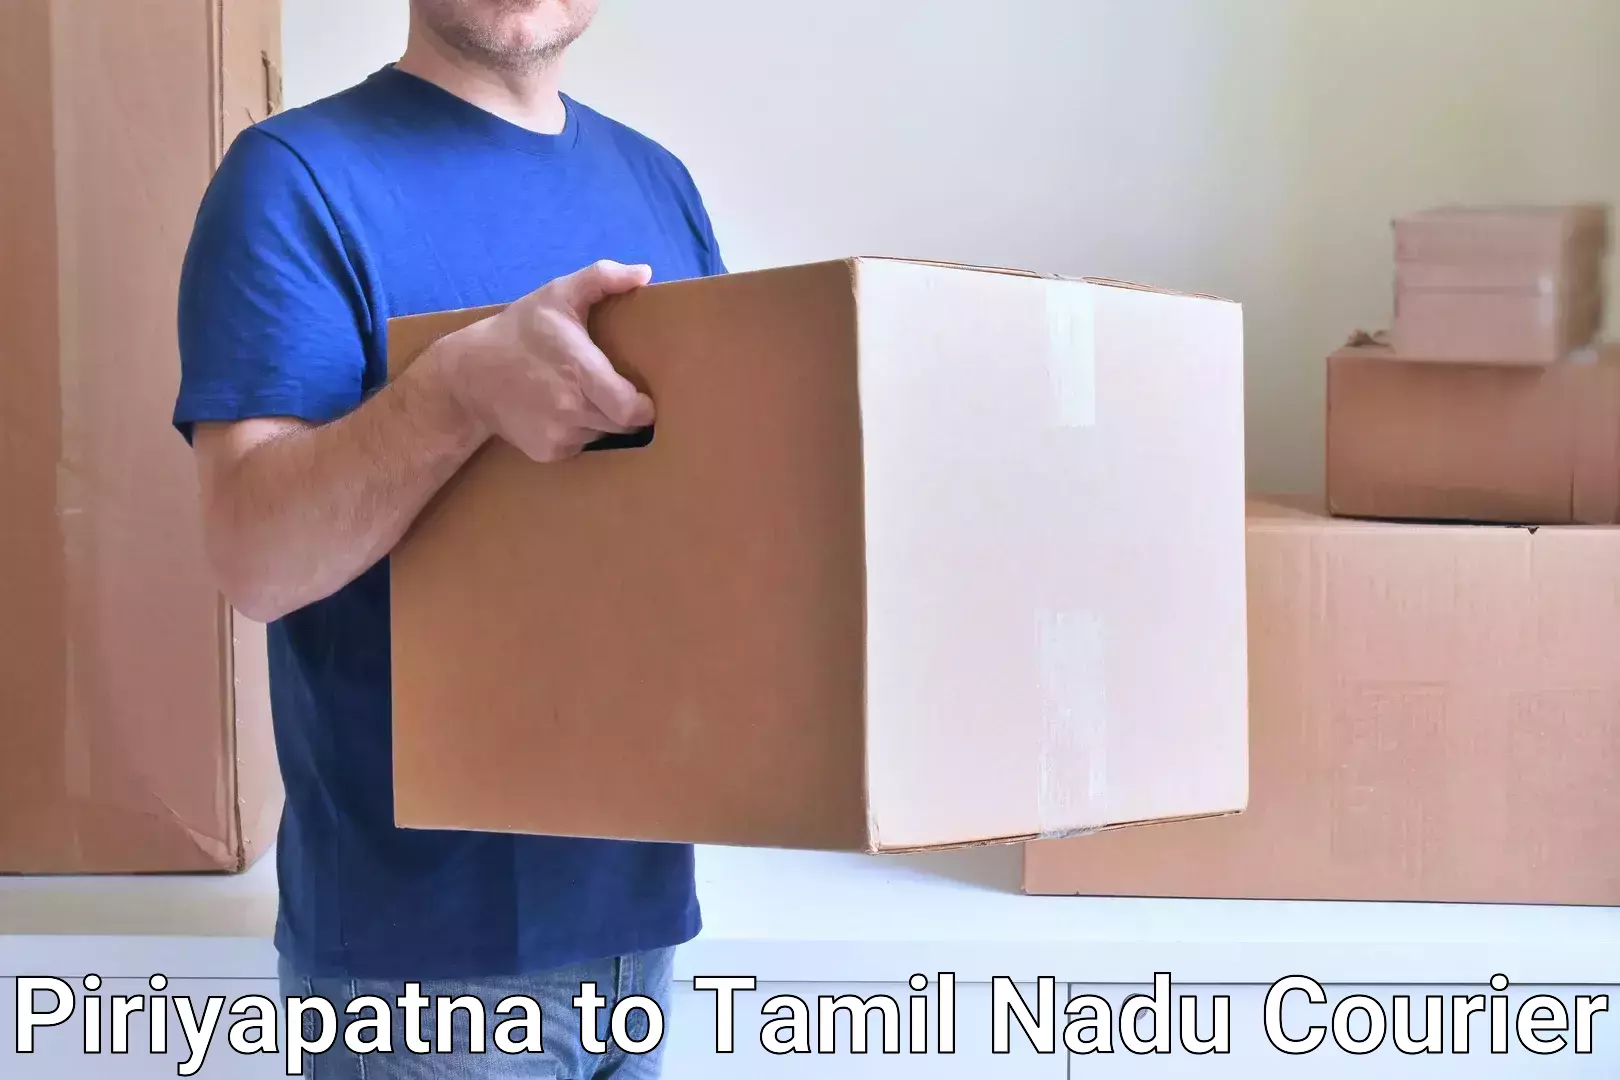 Large package courier Piriyapatna to Dharapuram